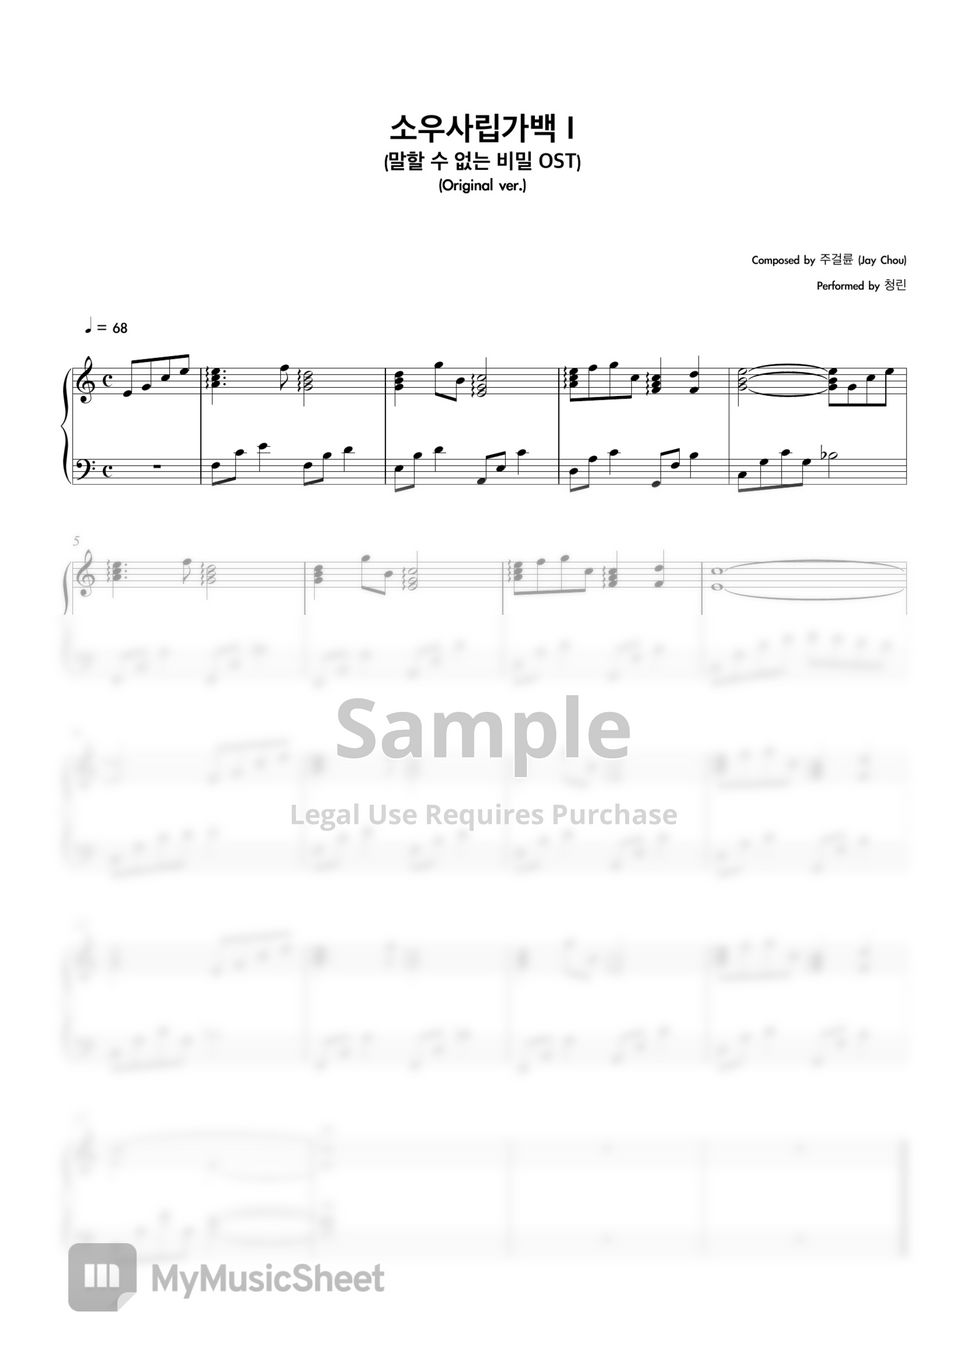 Secret OST - Sheet Music Book (8 Pieces) (Original ver.) by Cheong Lin